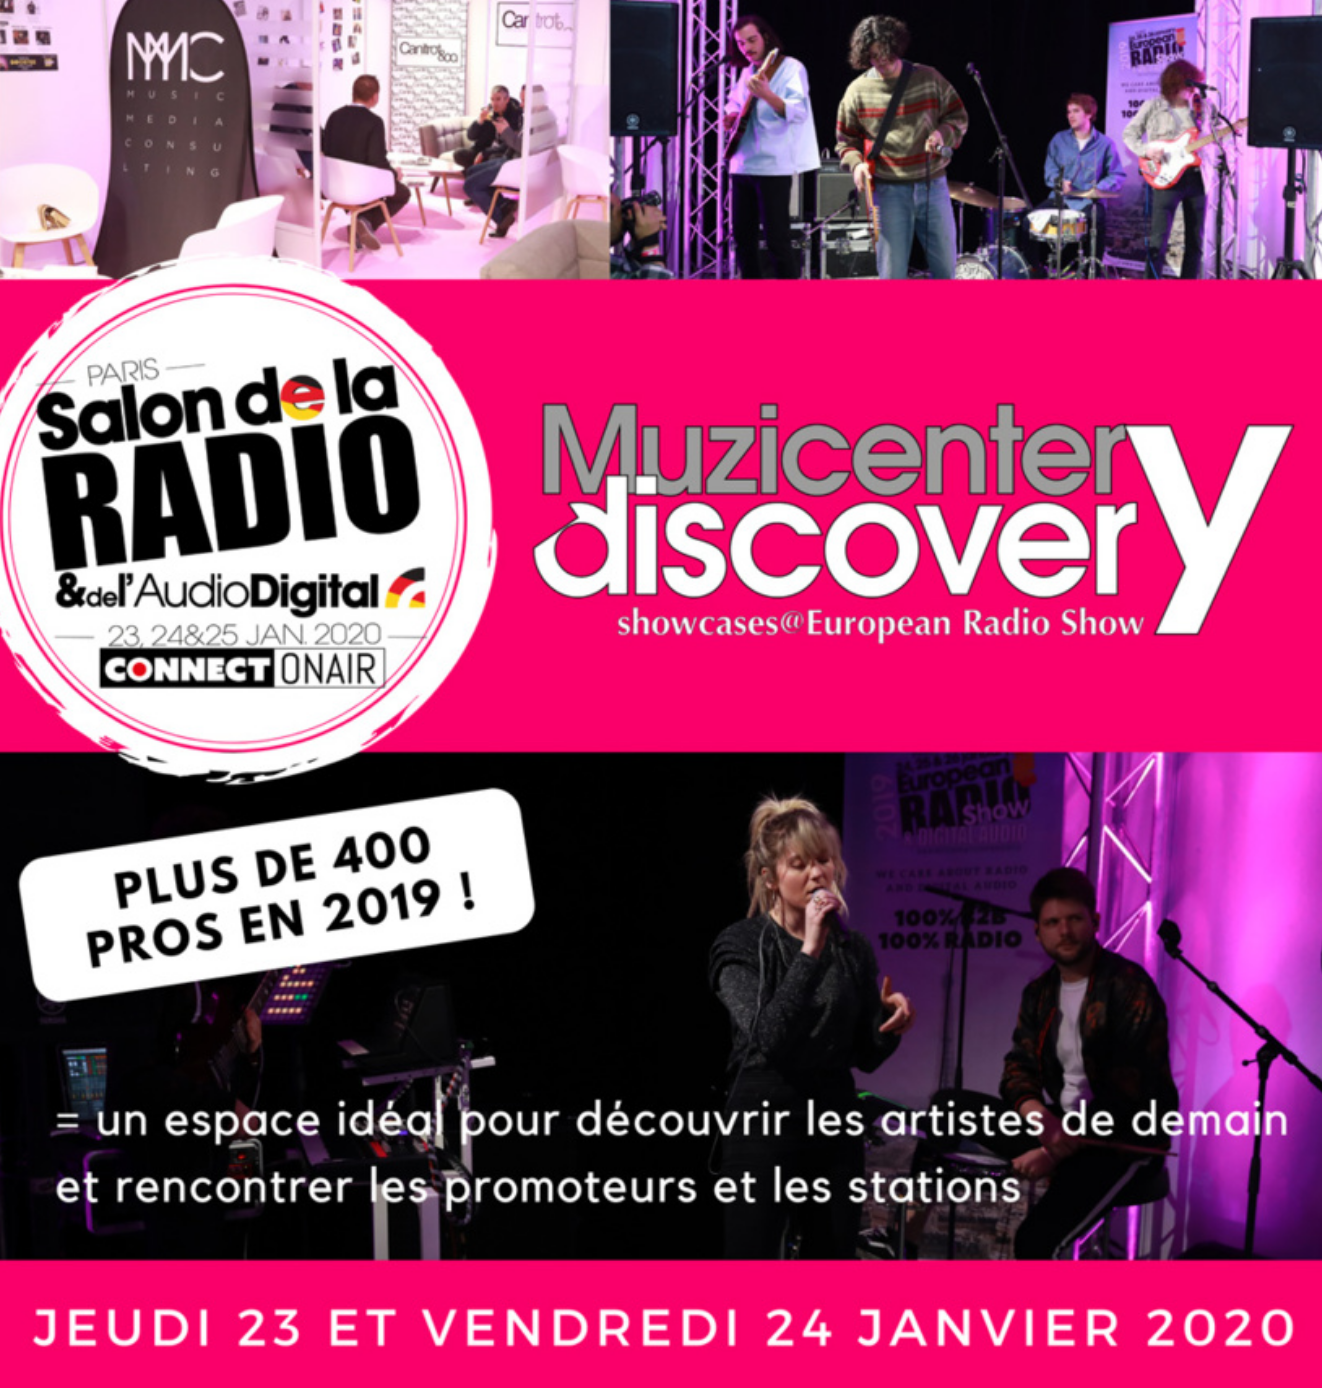 Muzicenter Discovery : la musique s'invite au Salon de la Radio